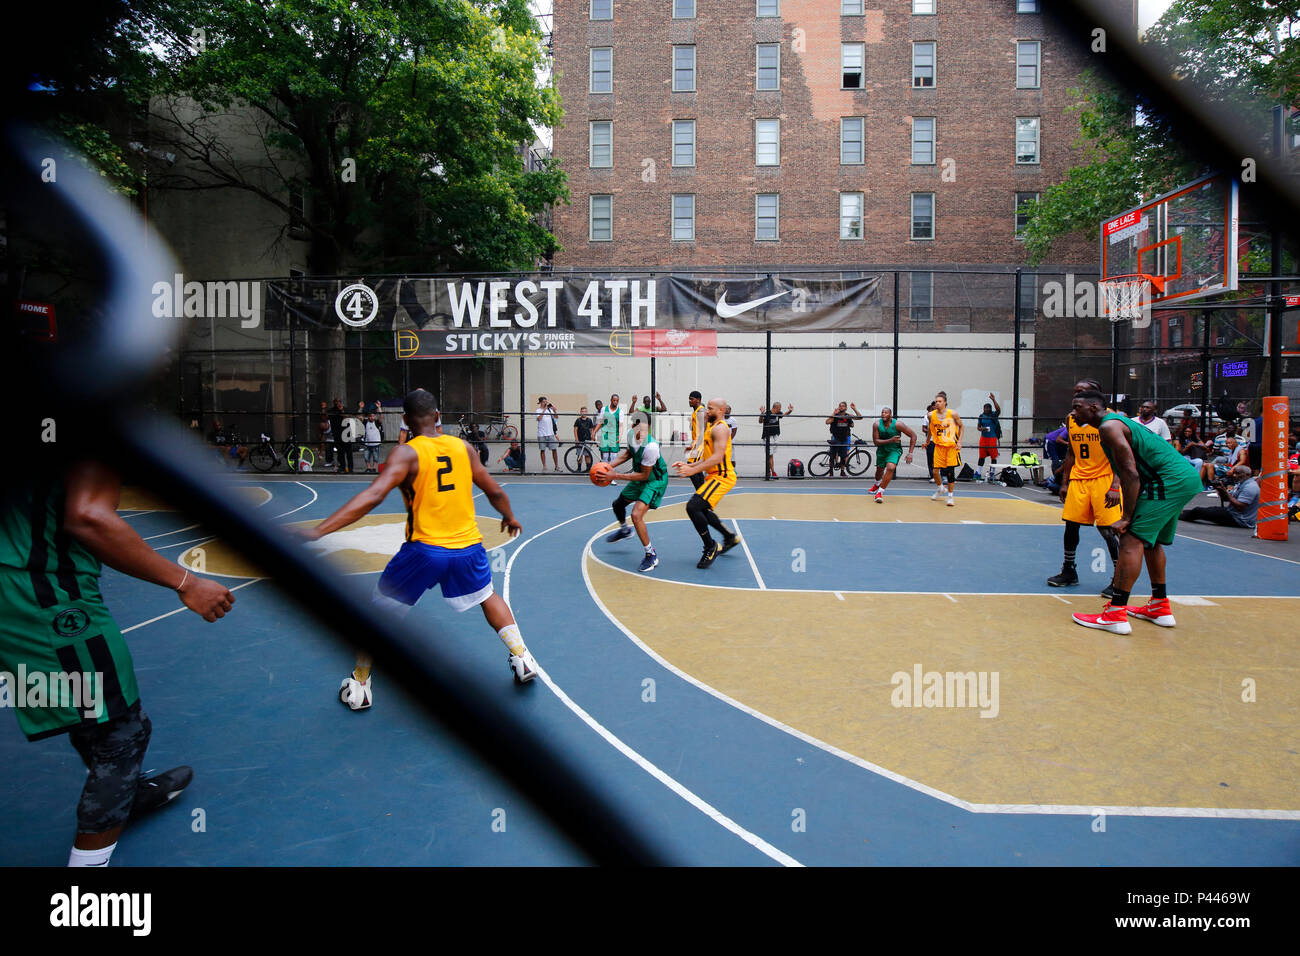 Un torneo de baloncesto West 4th con una vista espectacular a través de una valla de eslabones en Greenwich Village, Manhattan, Nueva York, NY. Foto de stock